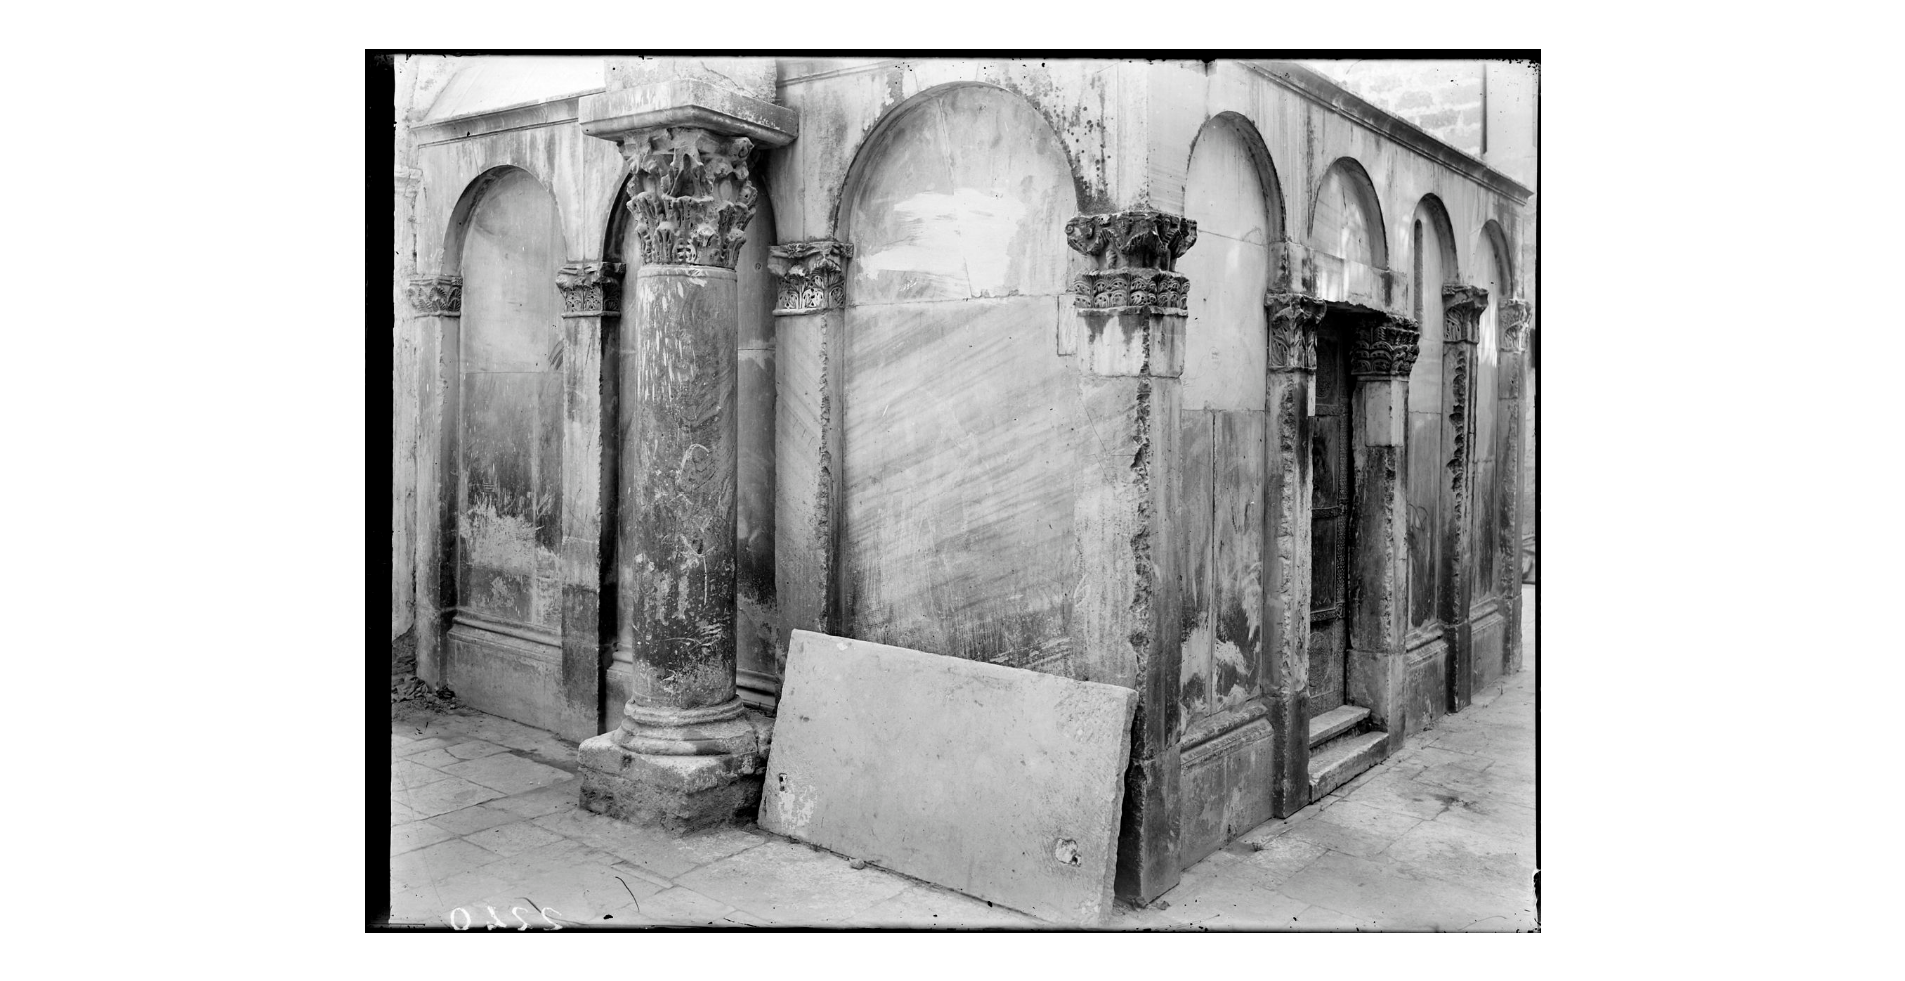 Fotografo non identificato, Canosa di Puglia - Cattedrale di S. Sabino, Tomba di Boemondo, particolare, 1908, gelatina ai sali d'argento/vetro, E002240